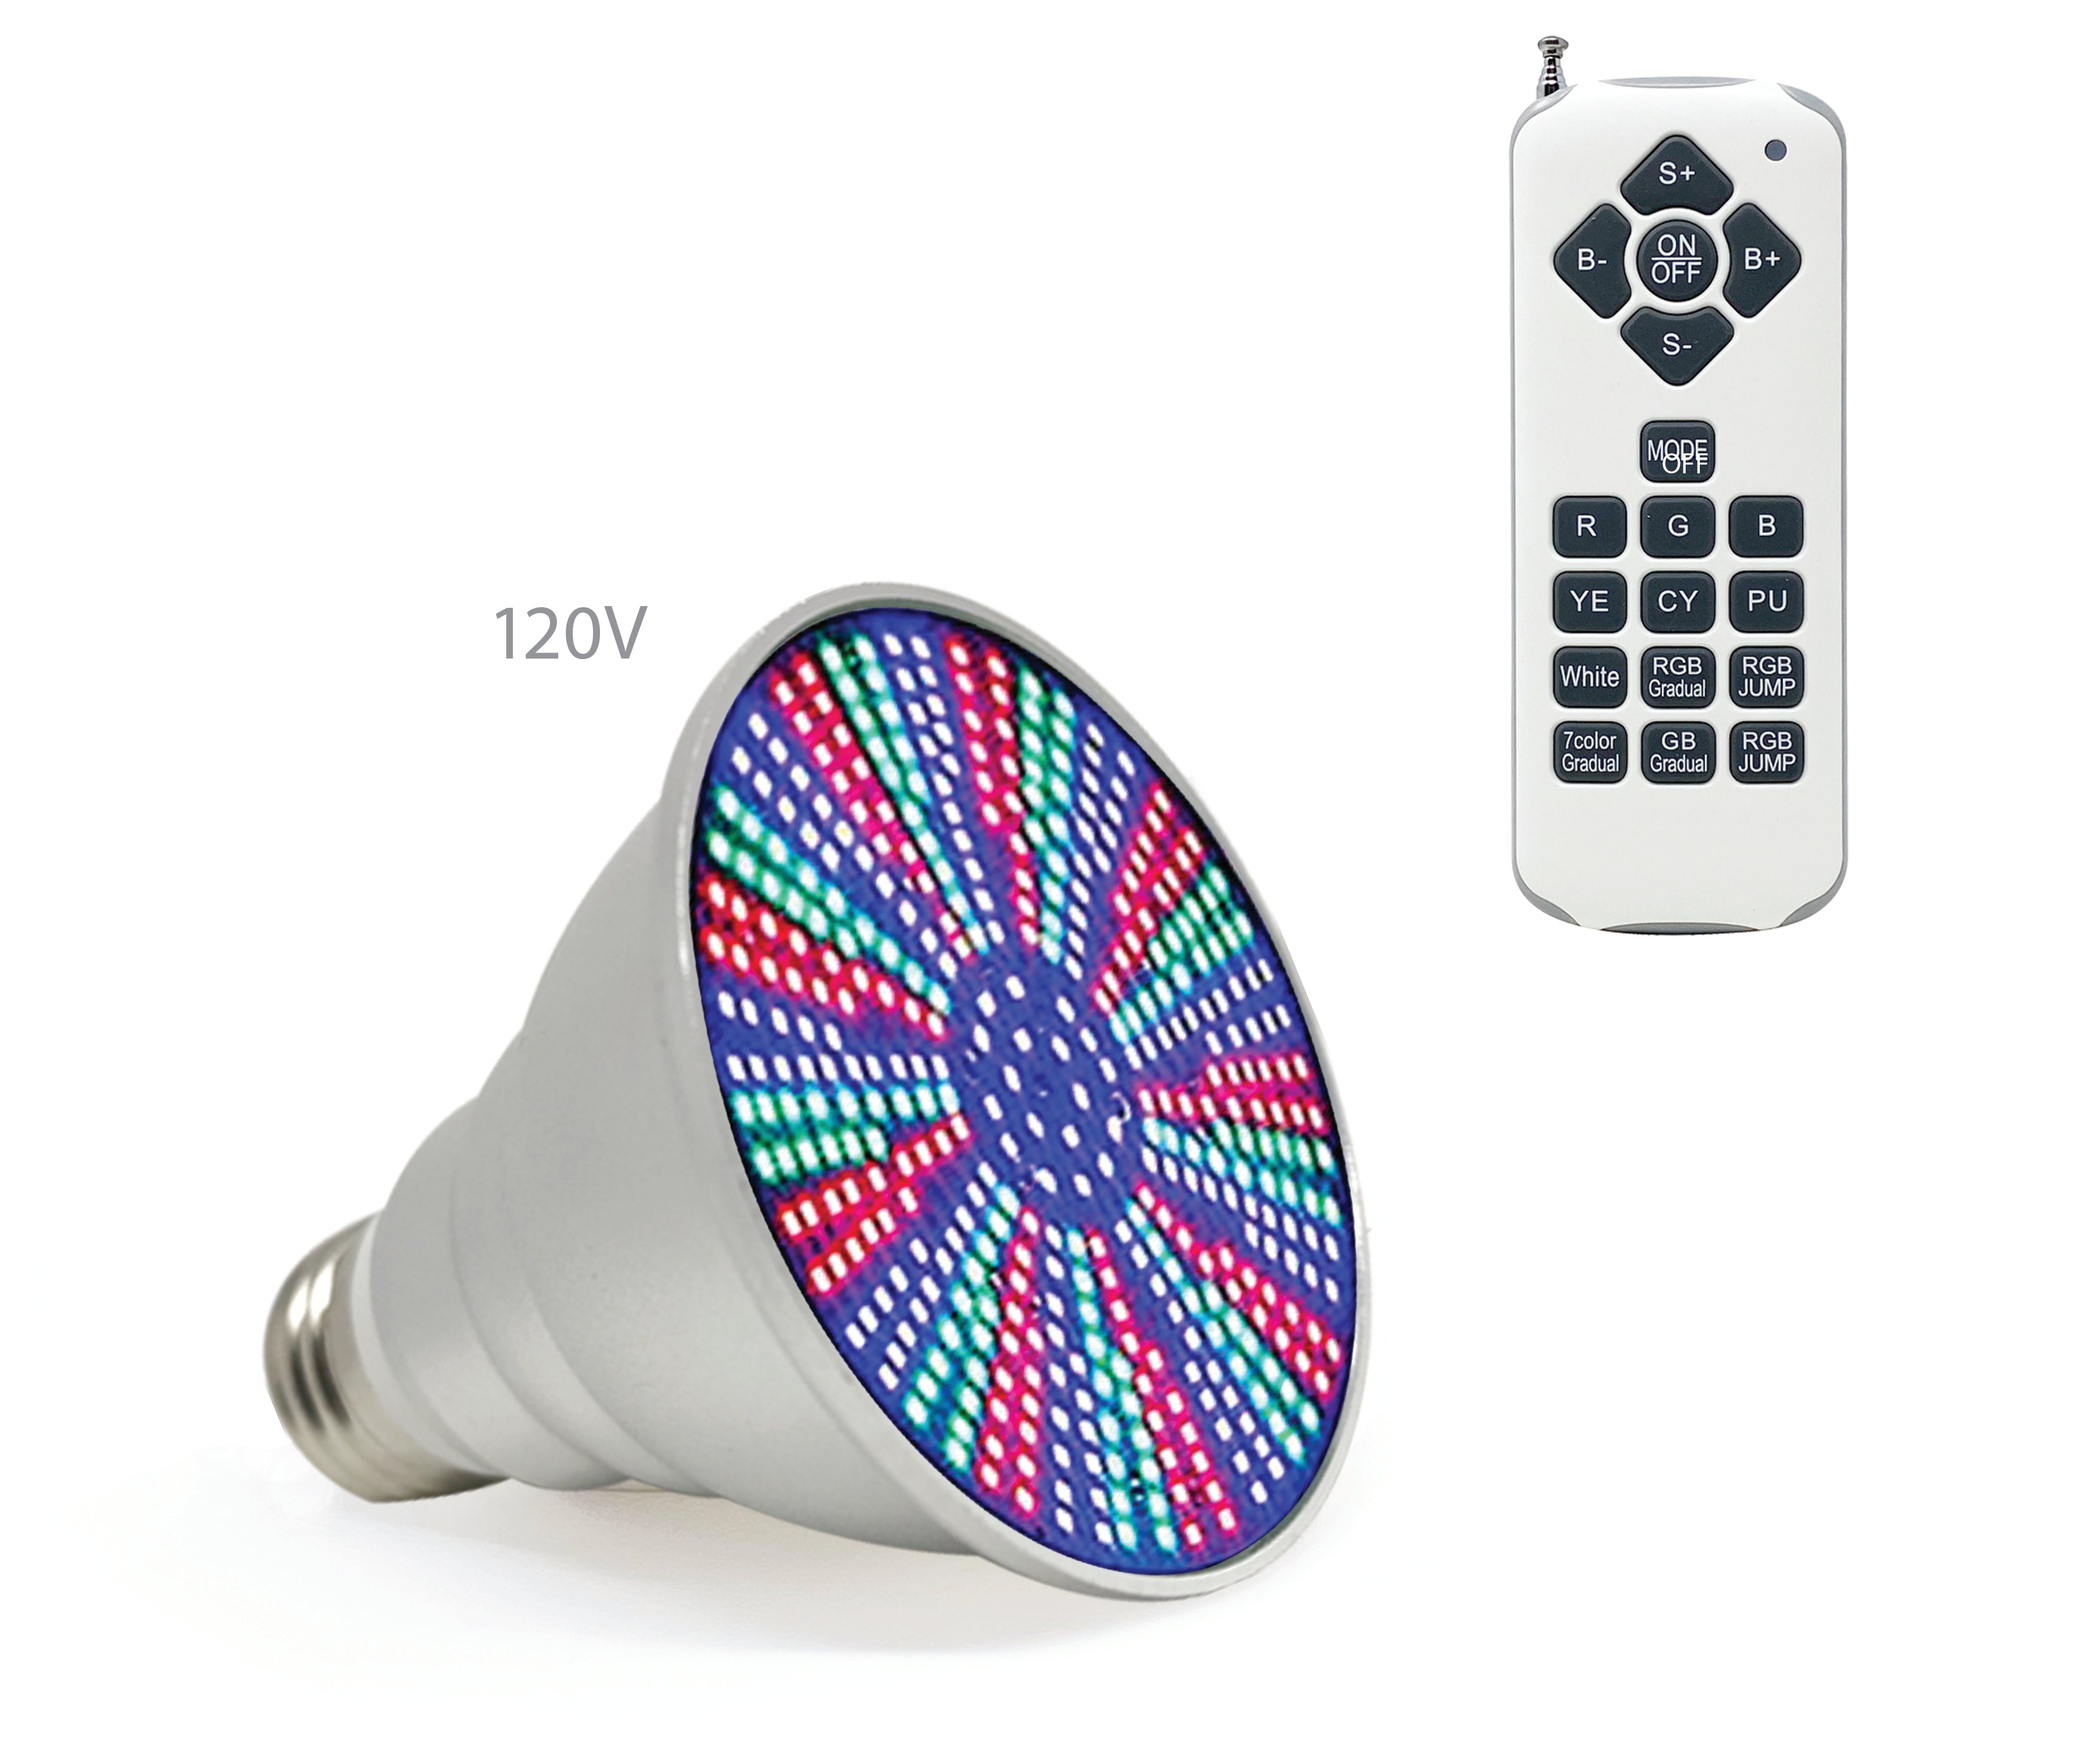 Life-Bulb LED-Glühbirne für Spa, Whirlpool | 120V 10W RGB-W | Lebenslange Ersatzgarantie | Ersatzbirne für Pentair, Hayward und andere Leuchten